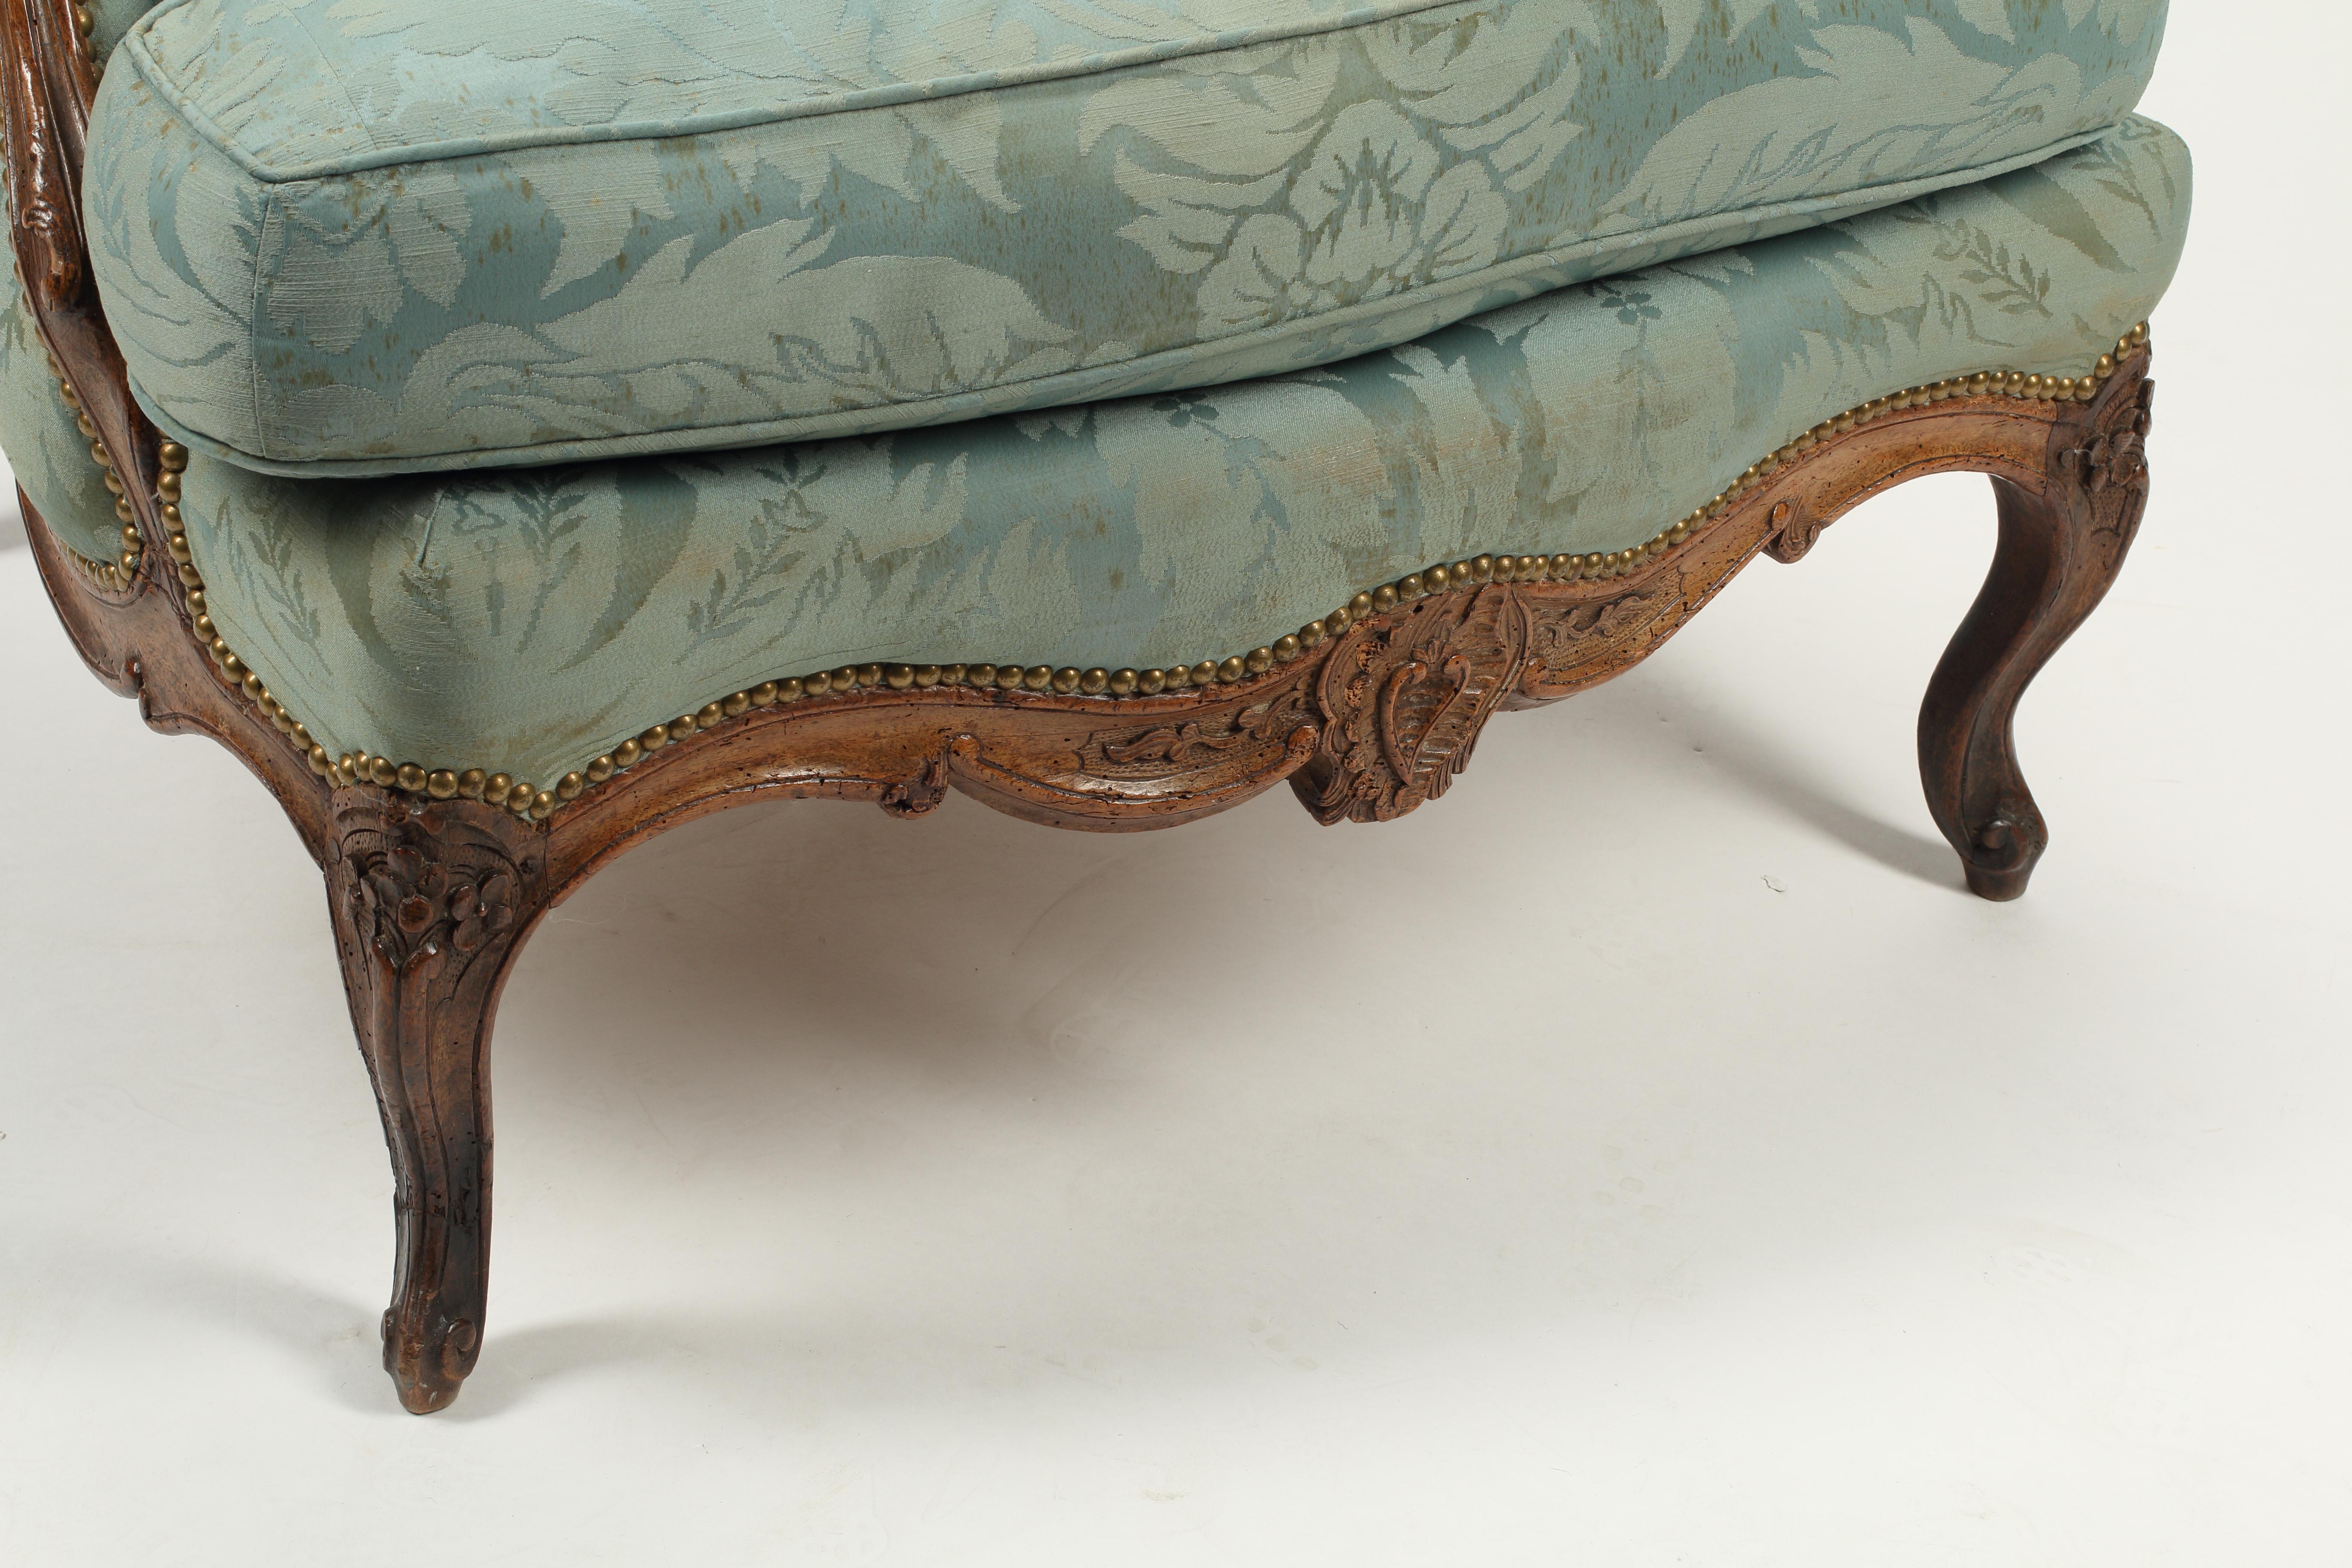 Cette bergère en noyer français du XVIIIe siècle est un exemple stupéfiant de l'artisanat et de l'art de cette période. La chaise provinciale française est fabriquée en noyer massif et présente des détails délicieusement sculptés, notamment un